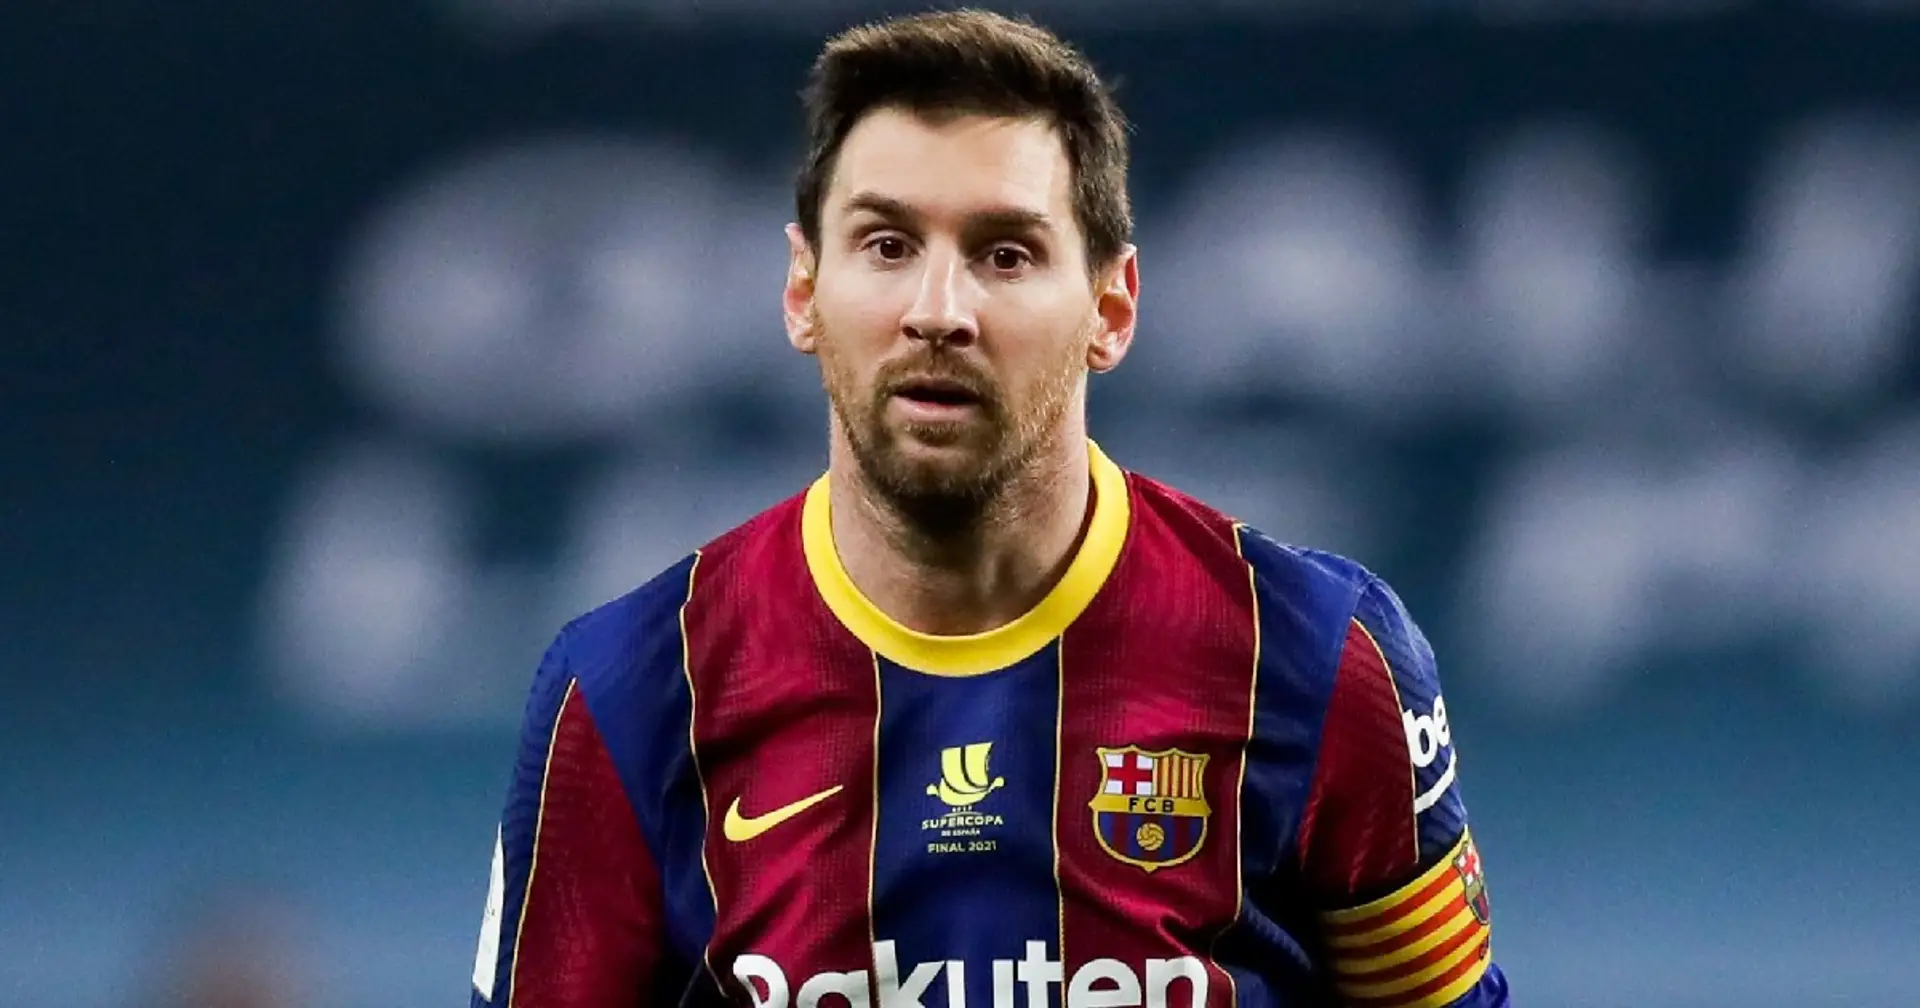 Messi ne veut pas prolonger son contrat avec le PSG et veut revenir à Barcelone : Gerard Romero